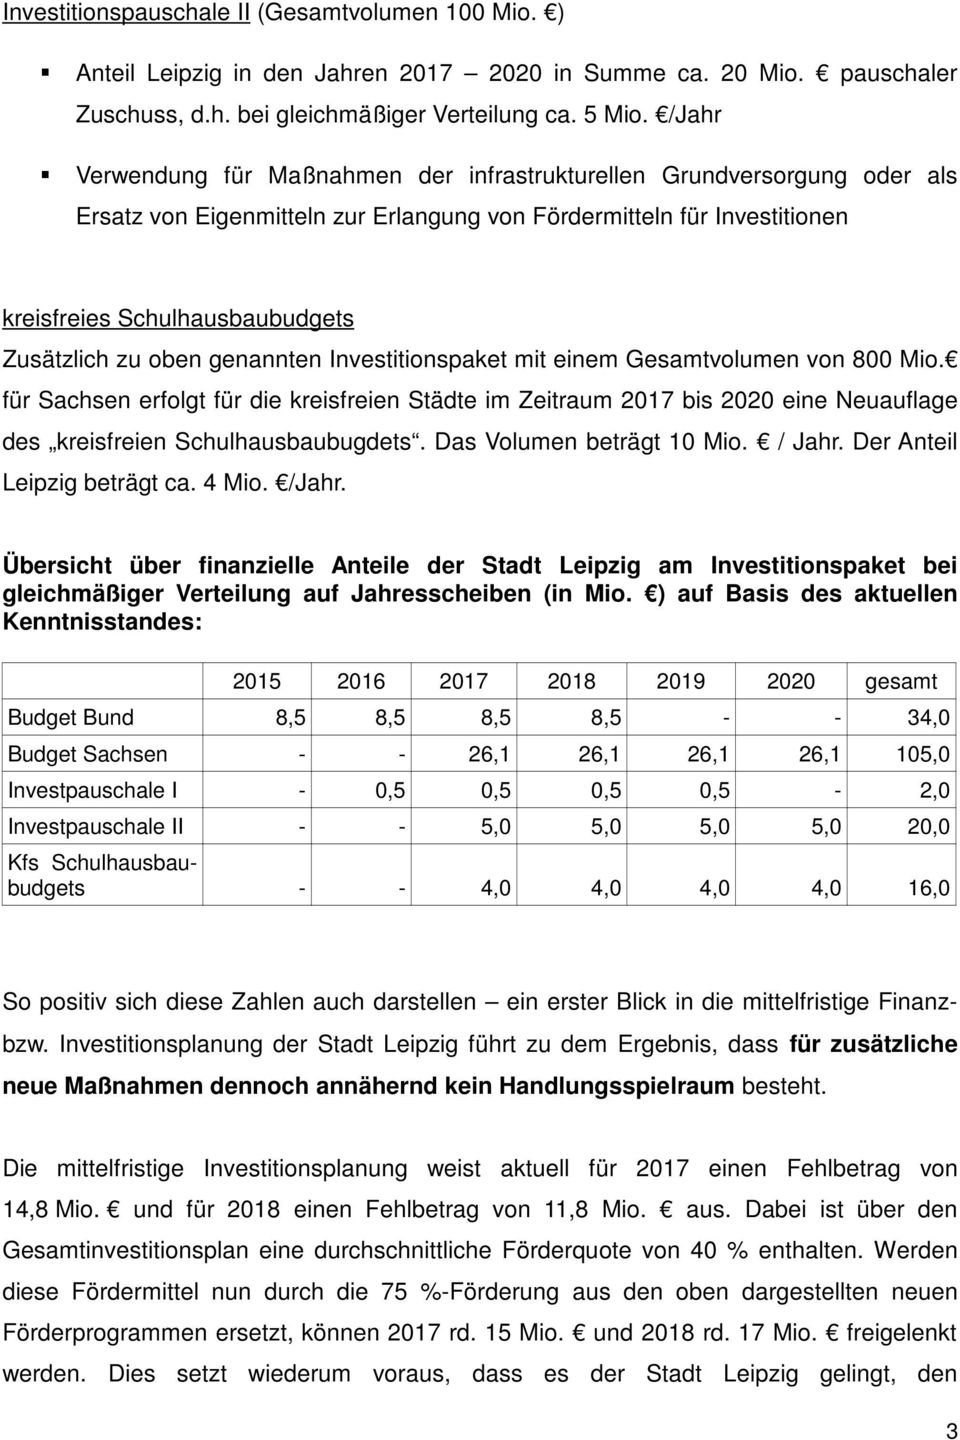 oben genannten Investitionspaket mit einem Gesamtvolumen von 800 Mio. für Sachsen erfolgt für die kreisfreien Städte im Zeitraum 2017 bis 2020 eine Neuauflage des kreisfreien Schulhausbaubugdets.